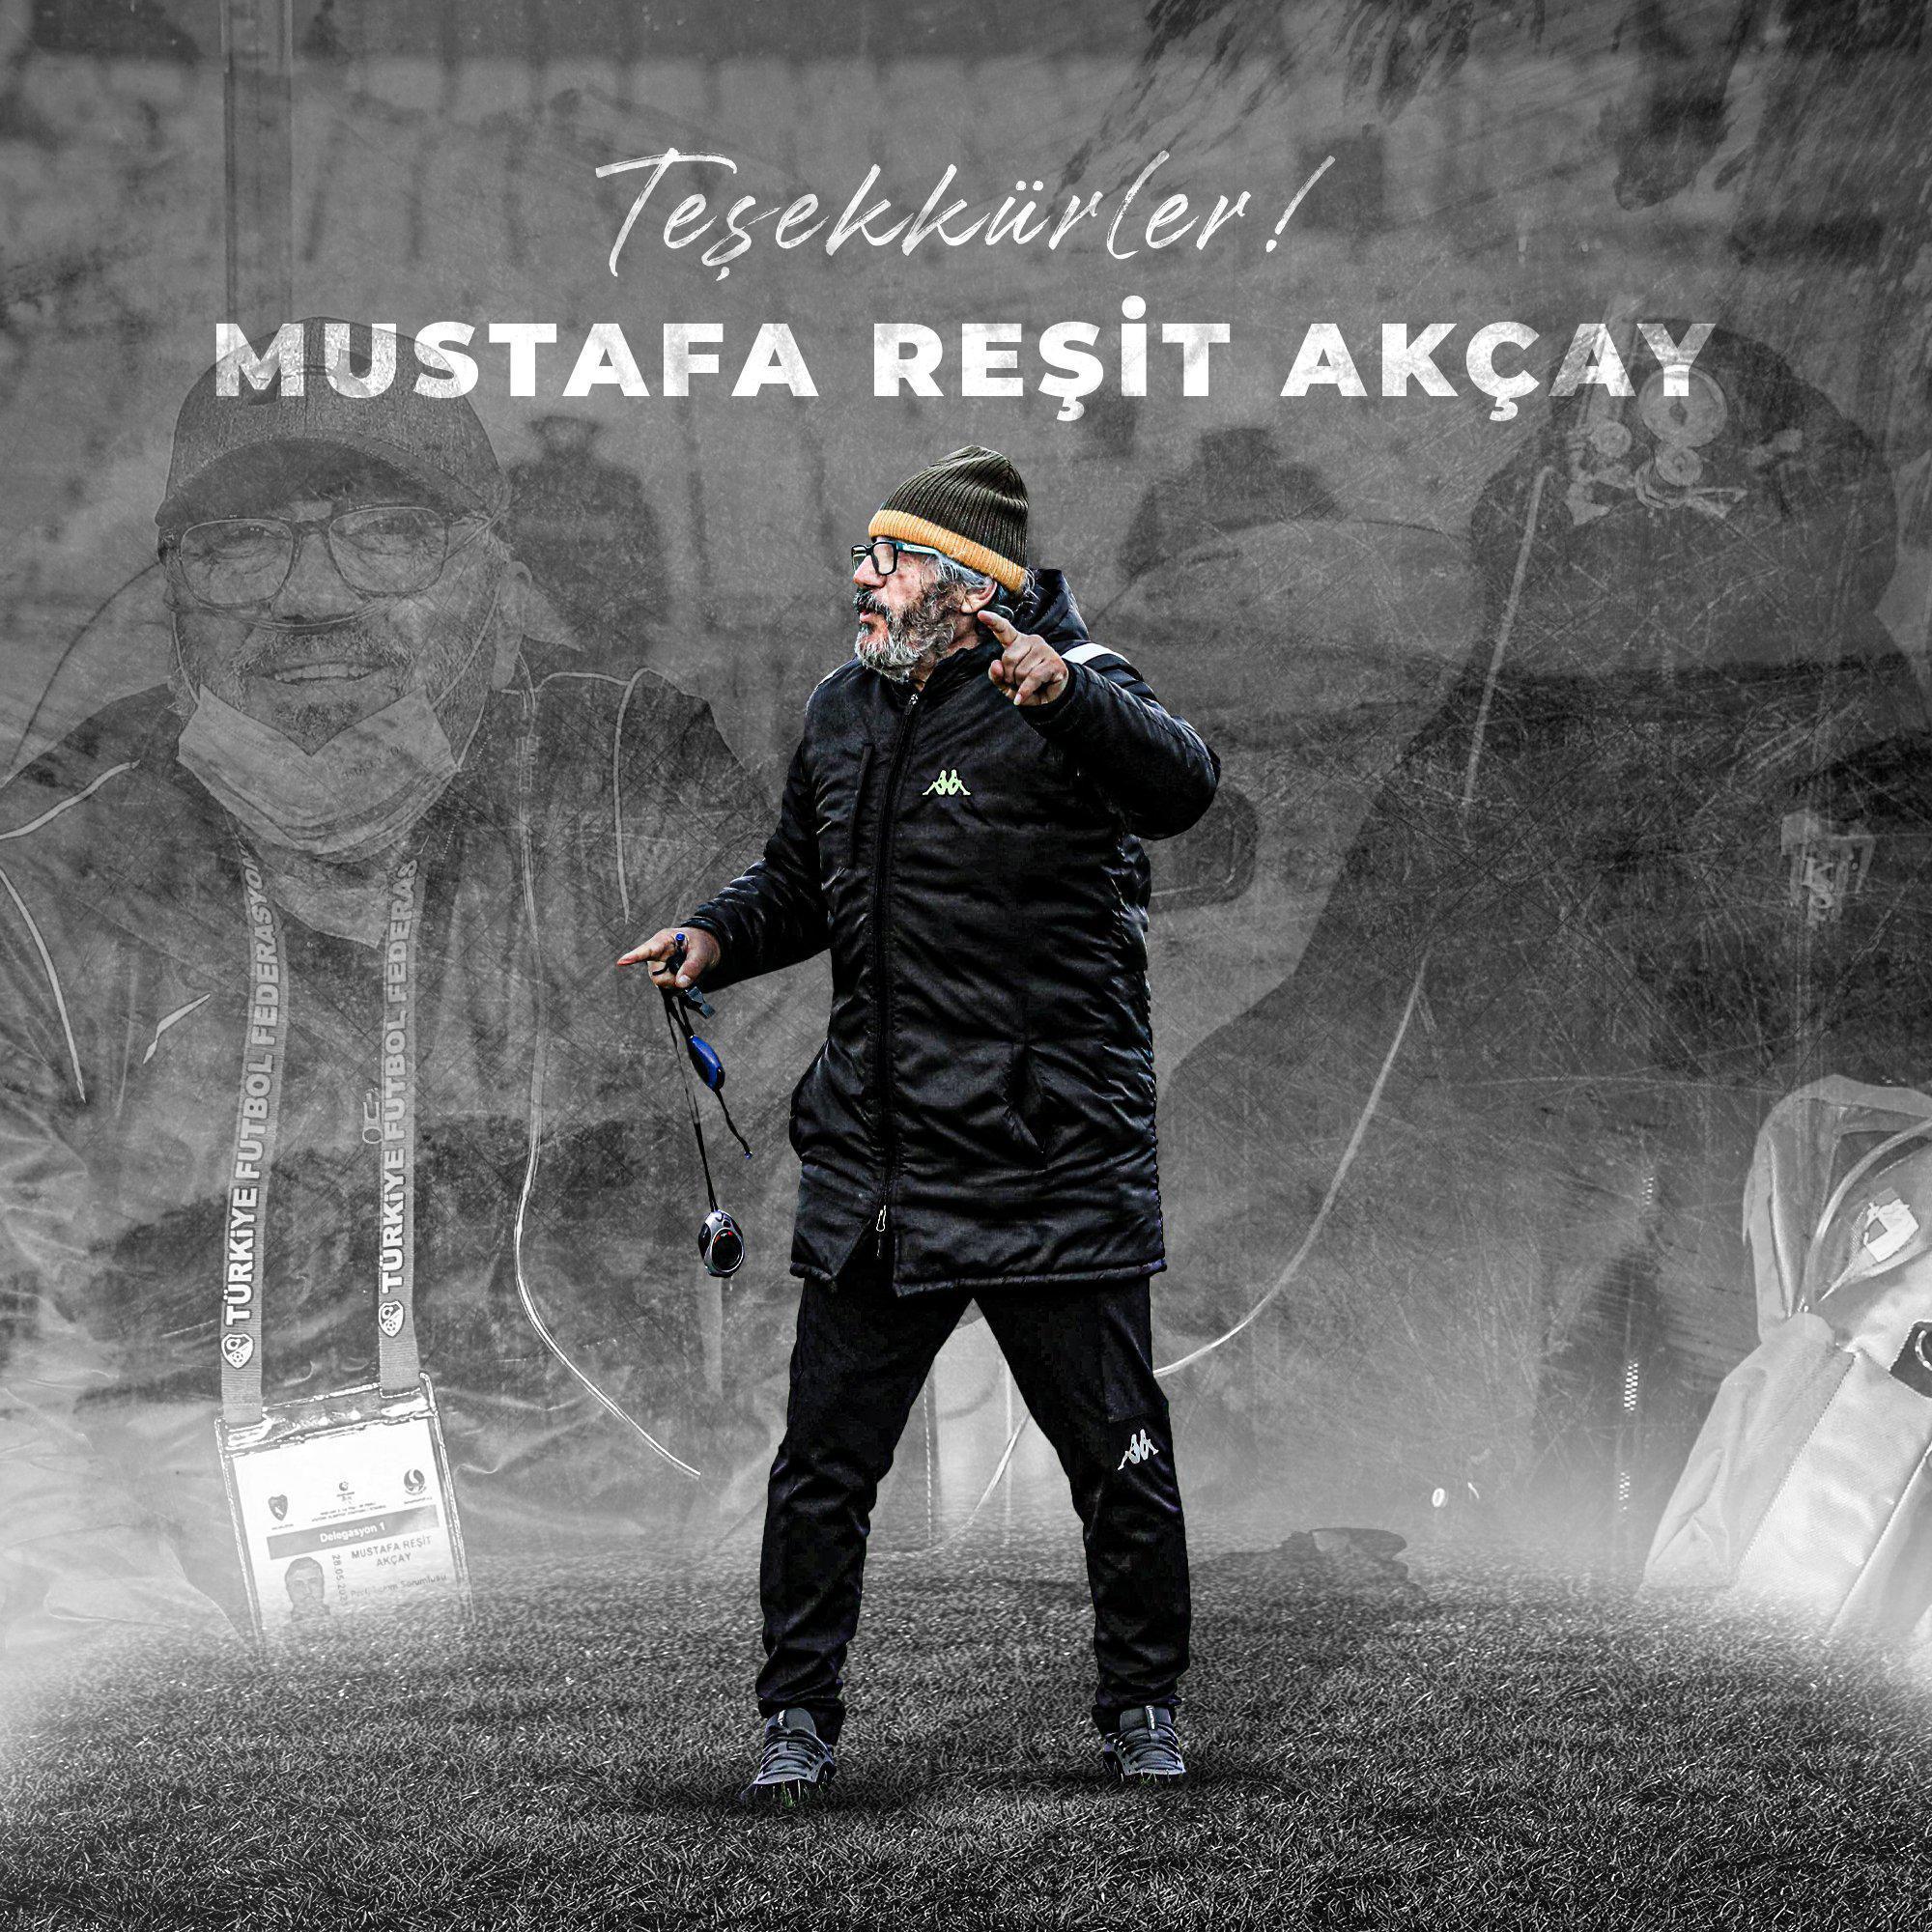 Kocaelispordan Mustafa Reşit Akçaya teşekkür mesajı